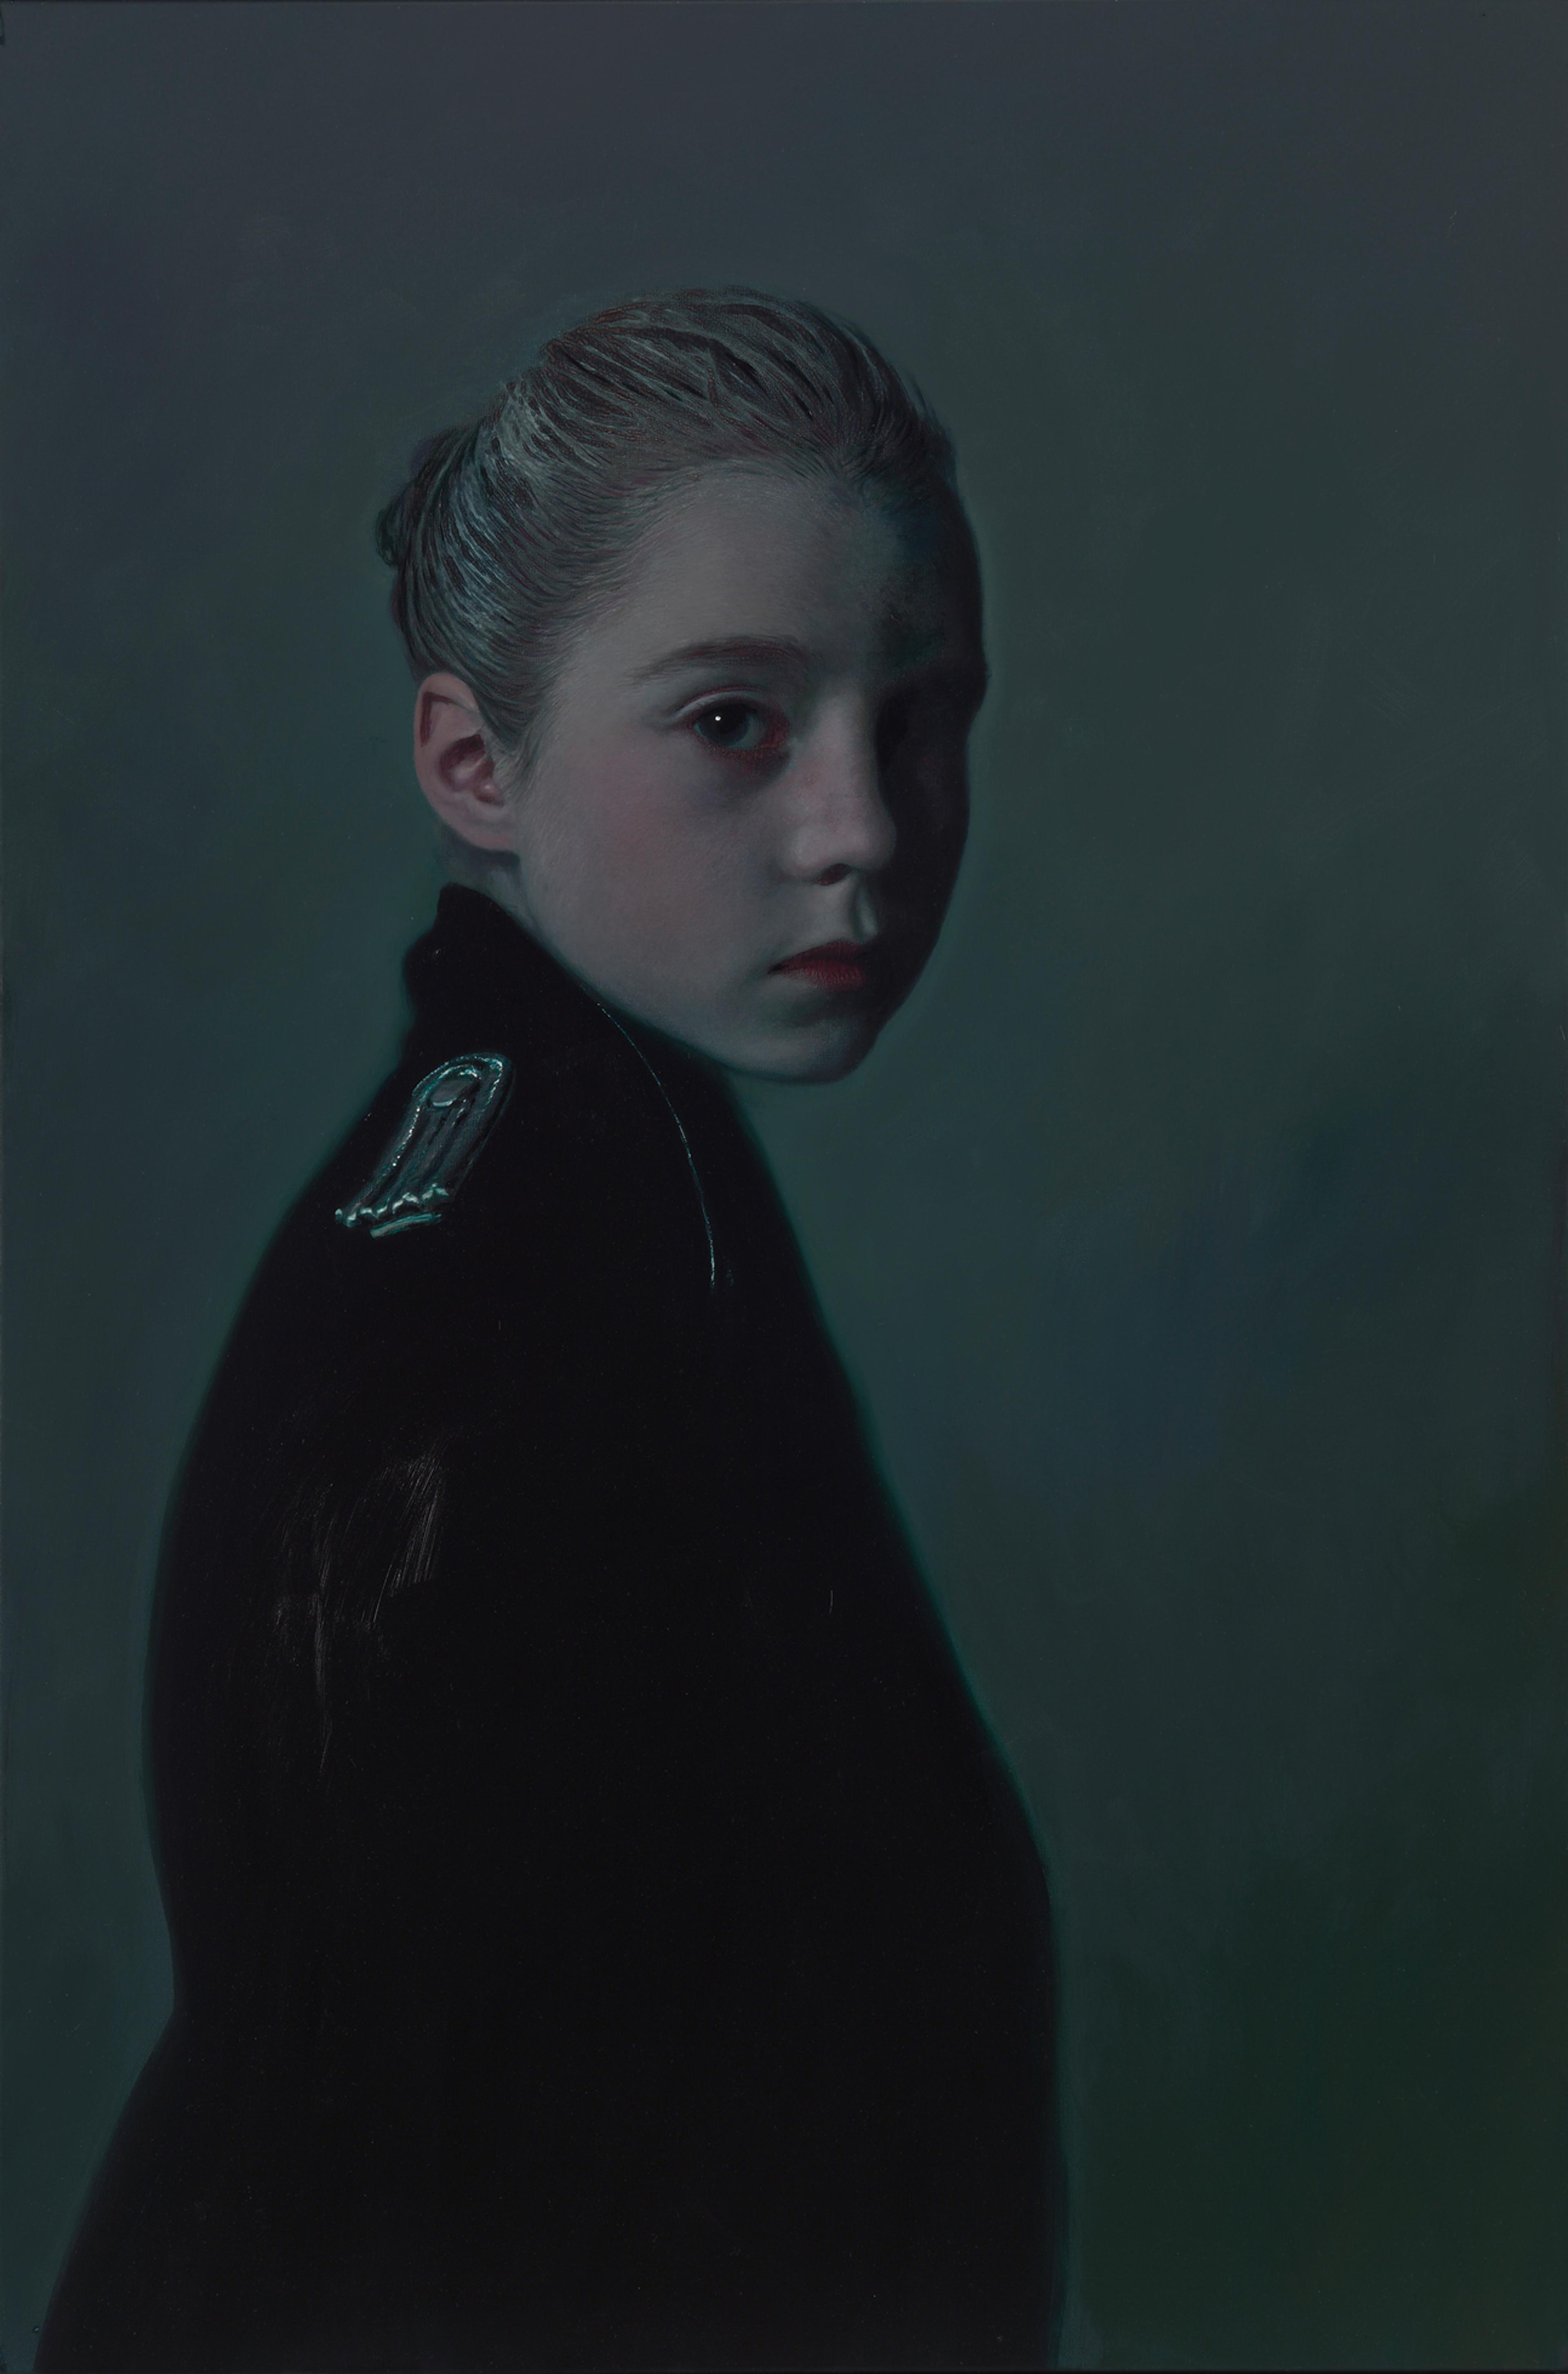 Fotorealistisches Gemälde eines jungen uniformierten Mädchens